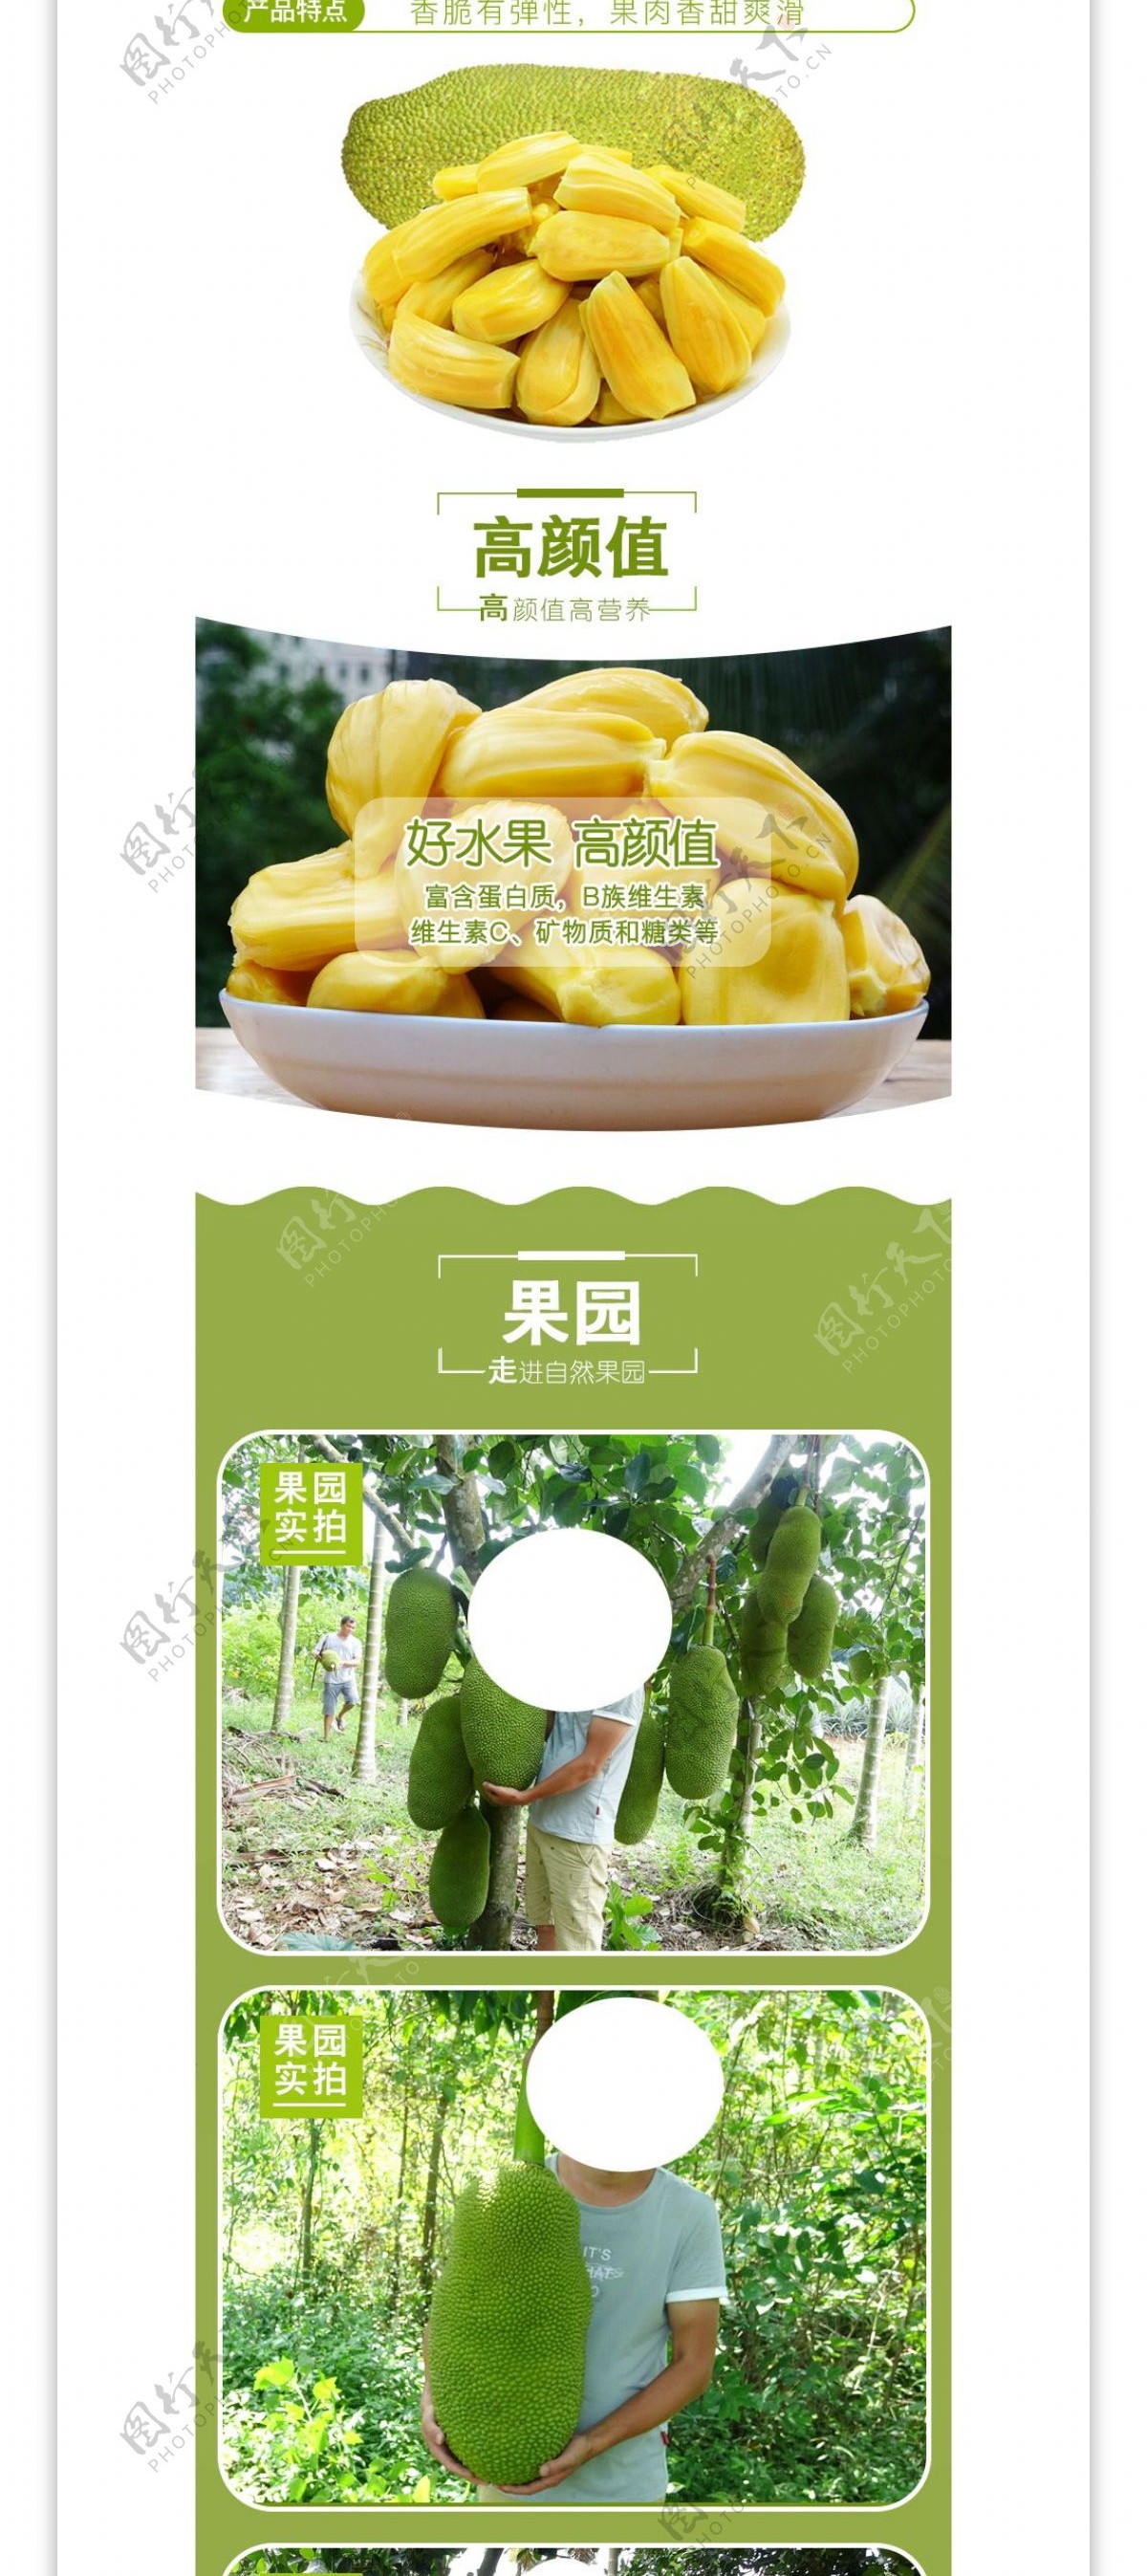 菠萝蜜详情页设计模板